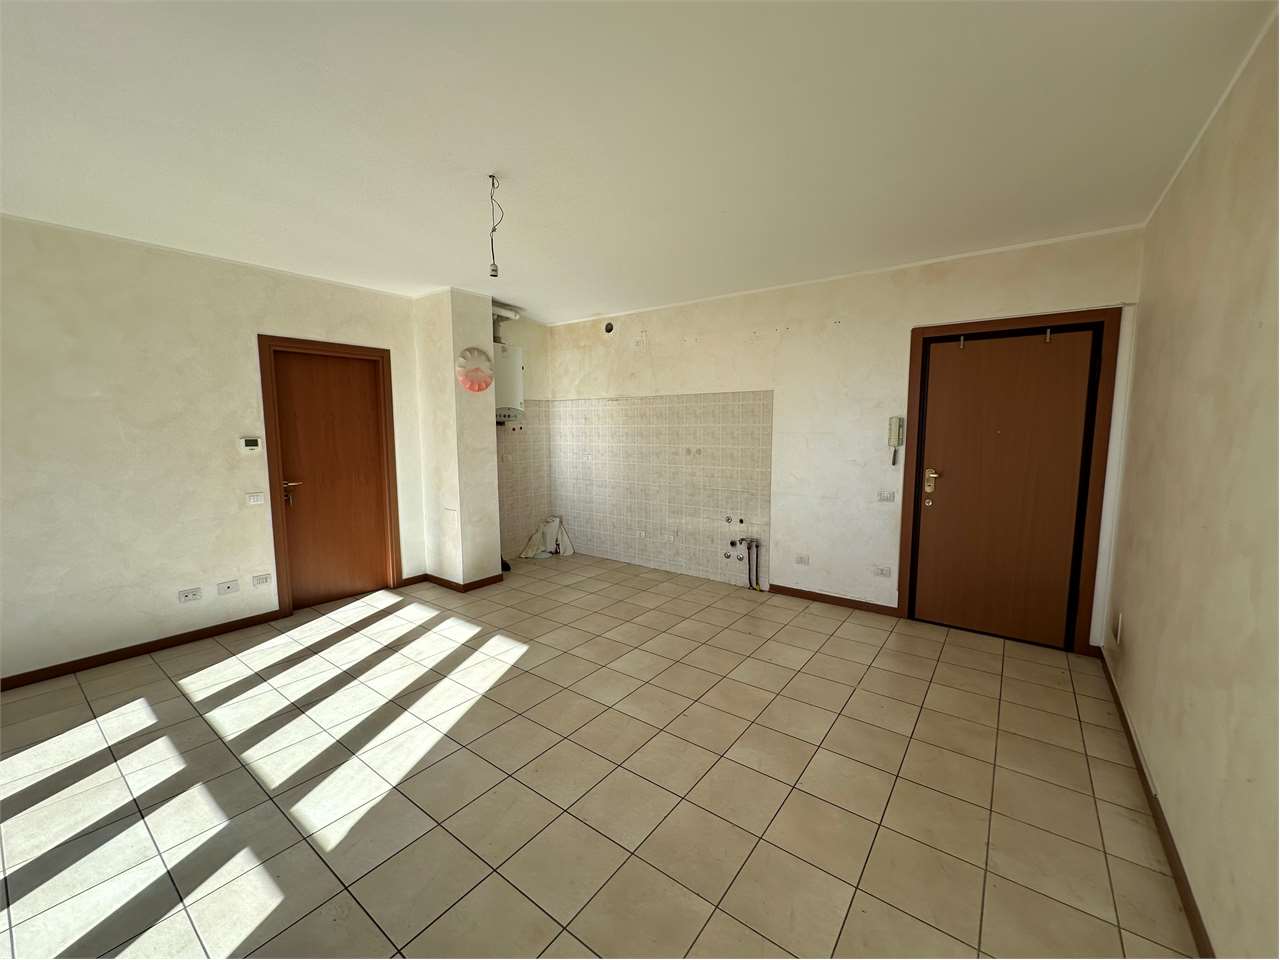 Appartamento in vendita a Mozzate, 2 locali, prezzo € 147.000 | PortaleAgenzieImmobiliari.it